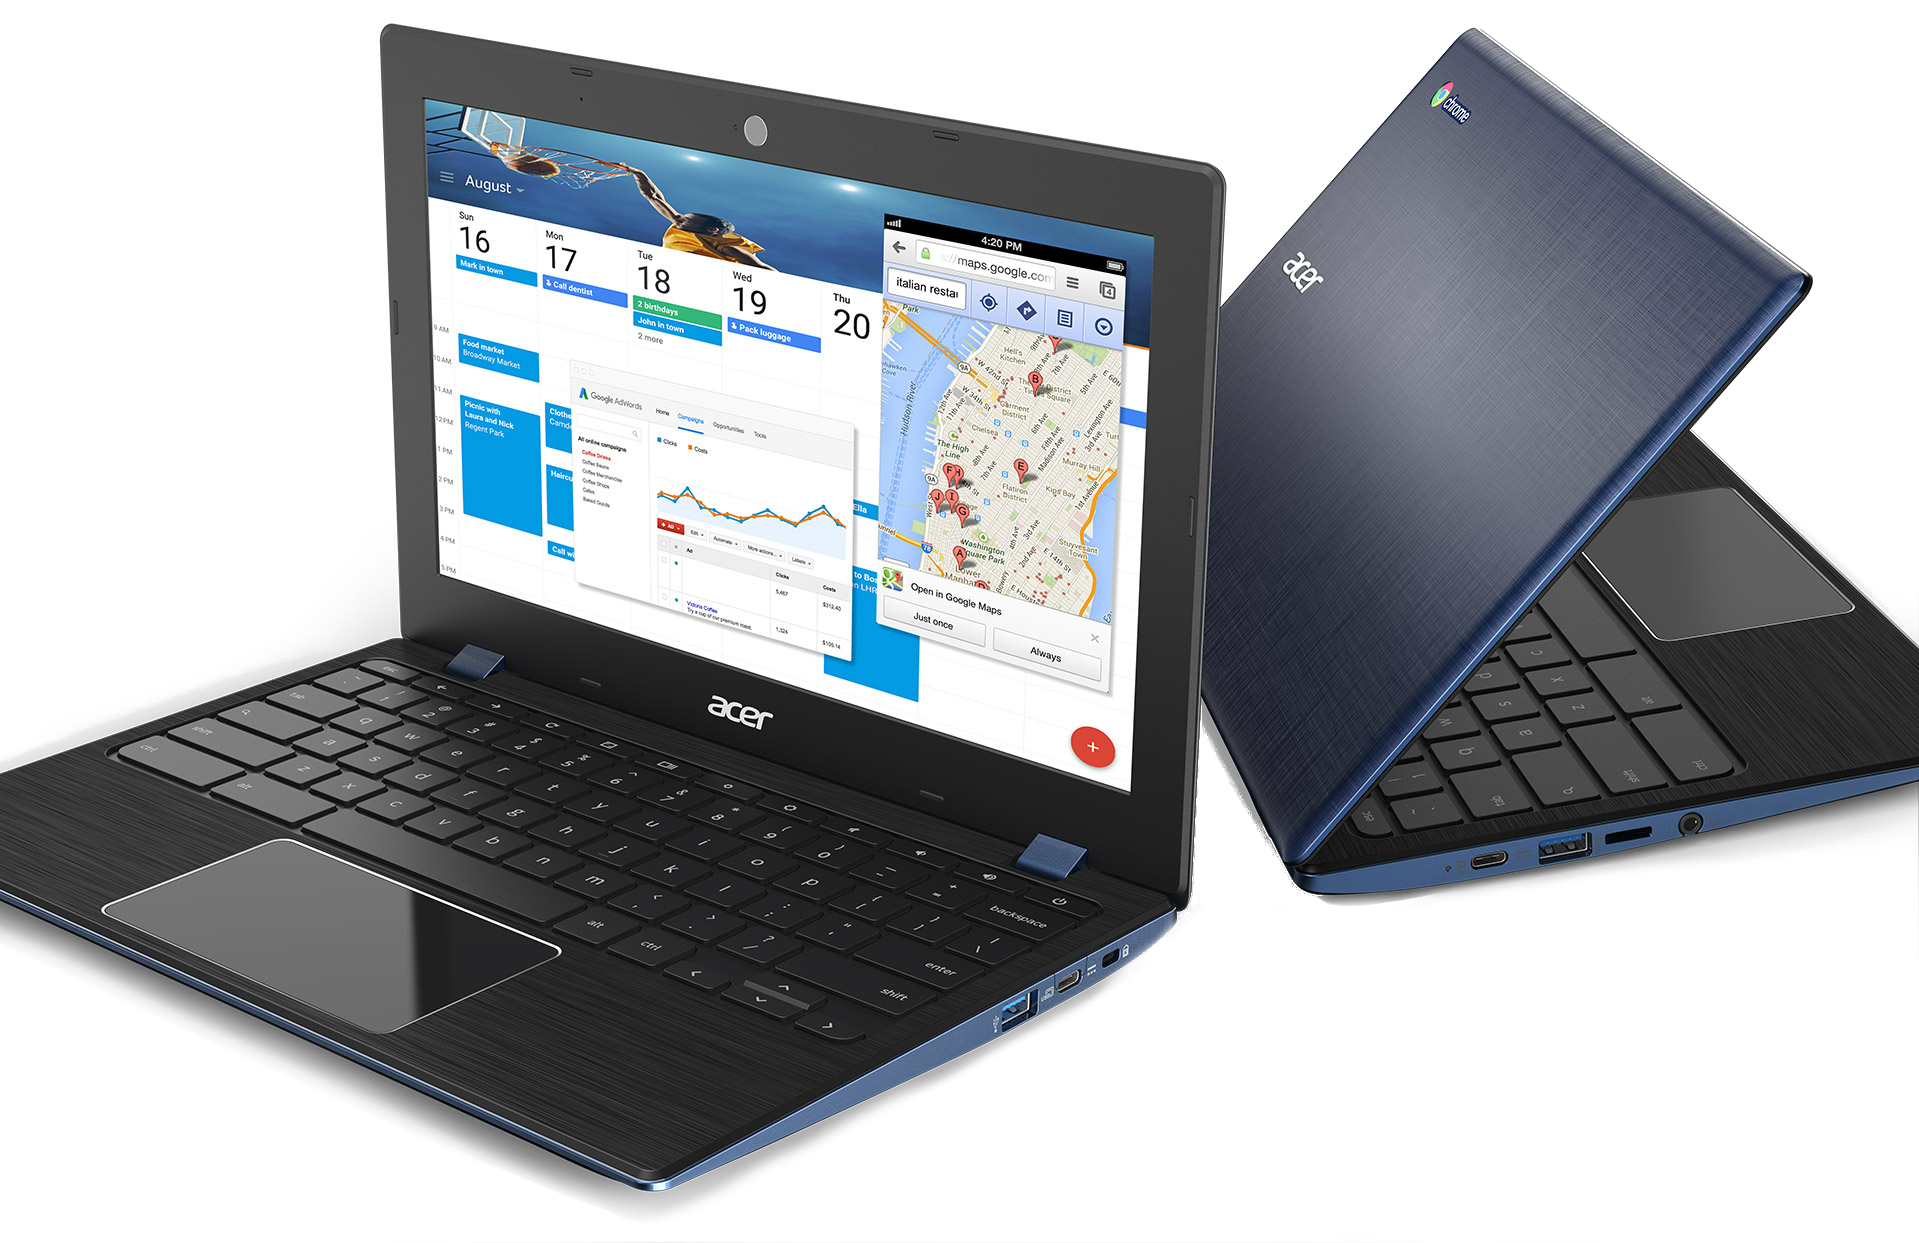 Acer Chromebook 11 Indigo Blue